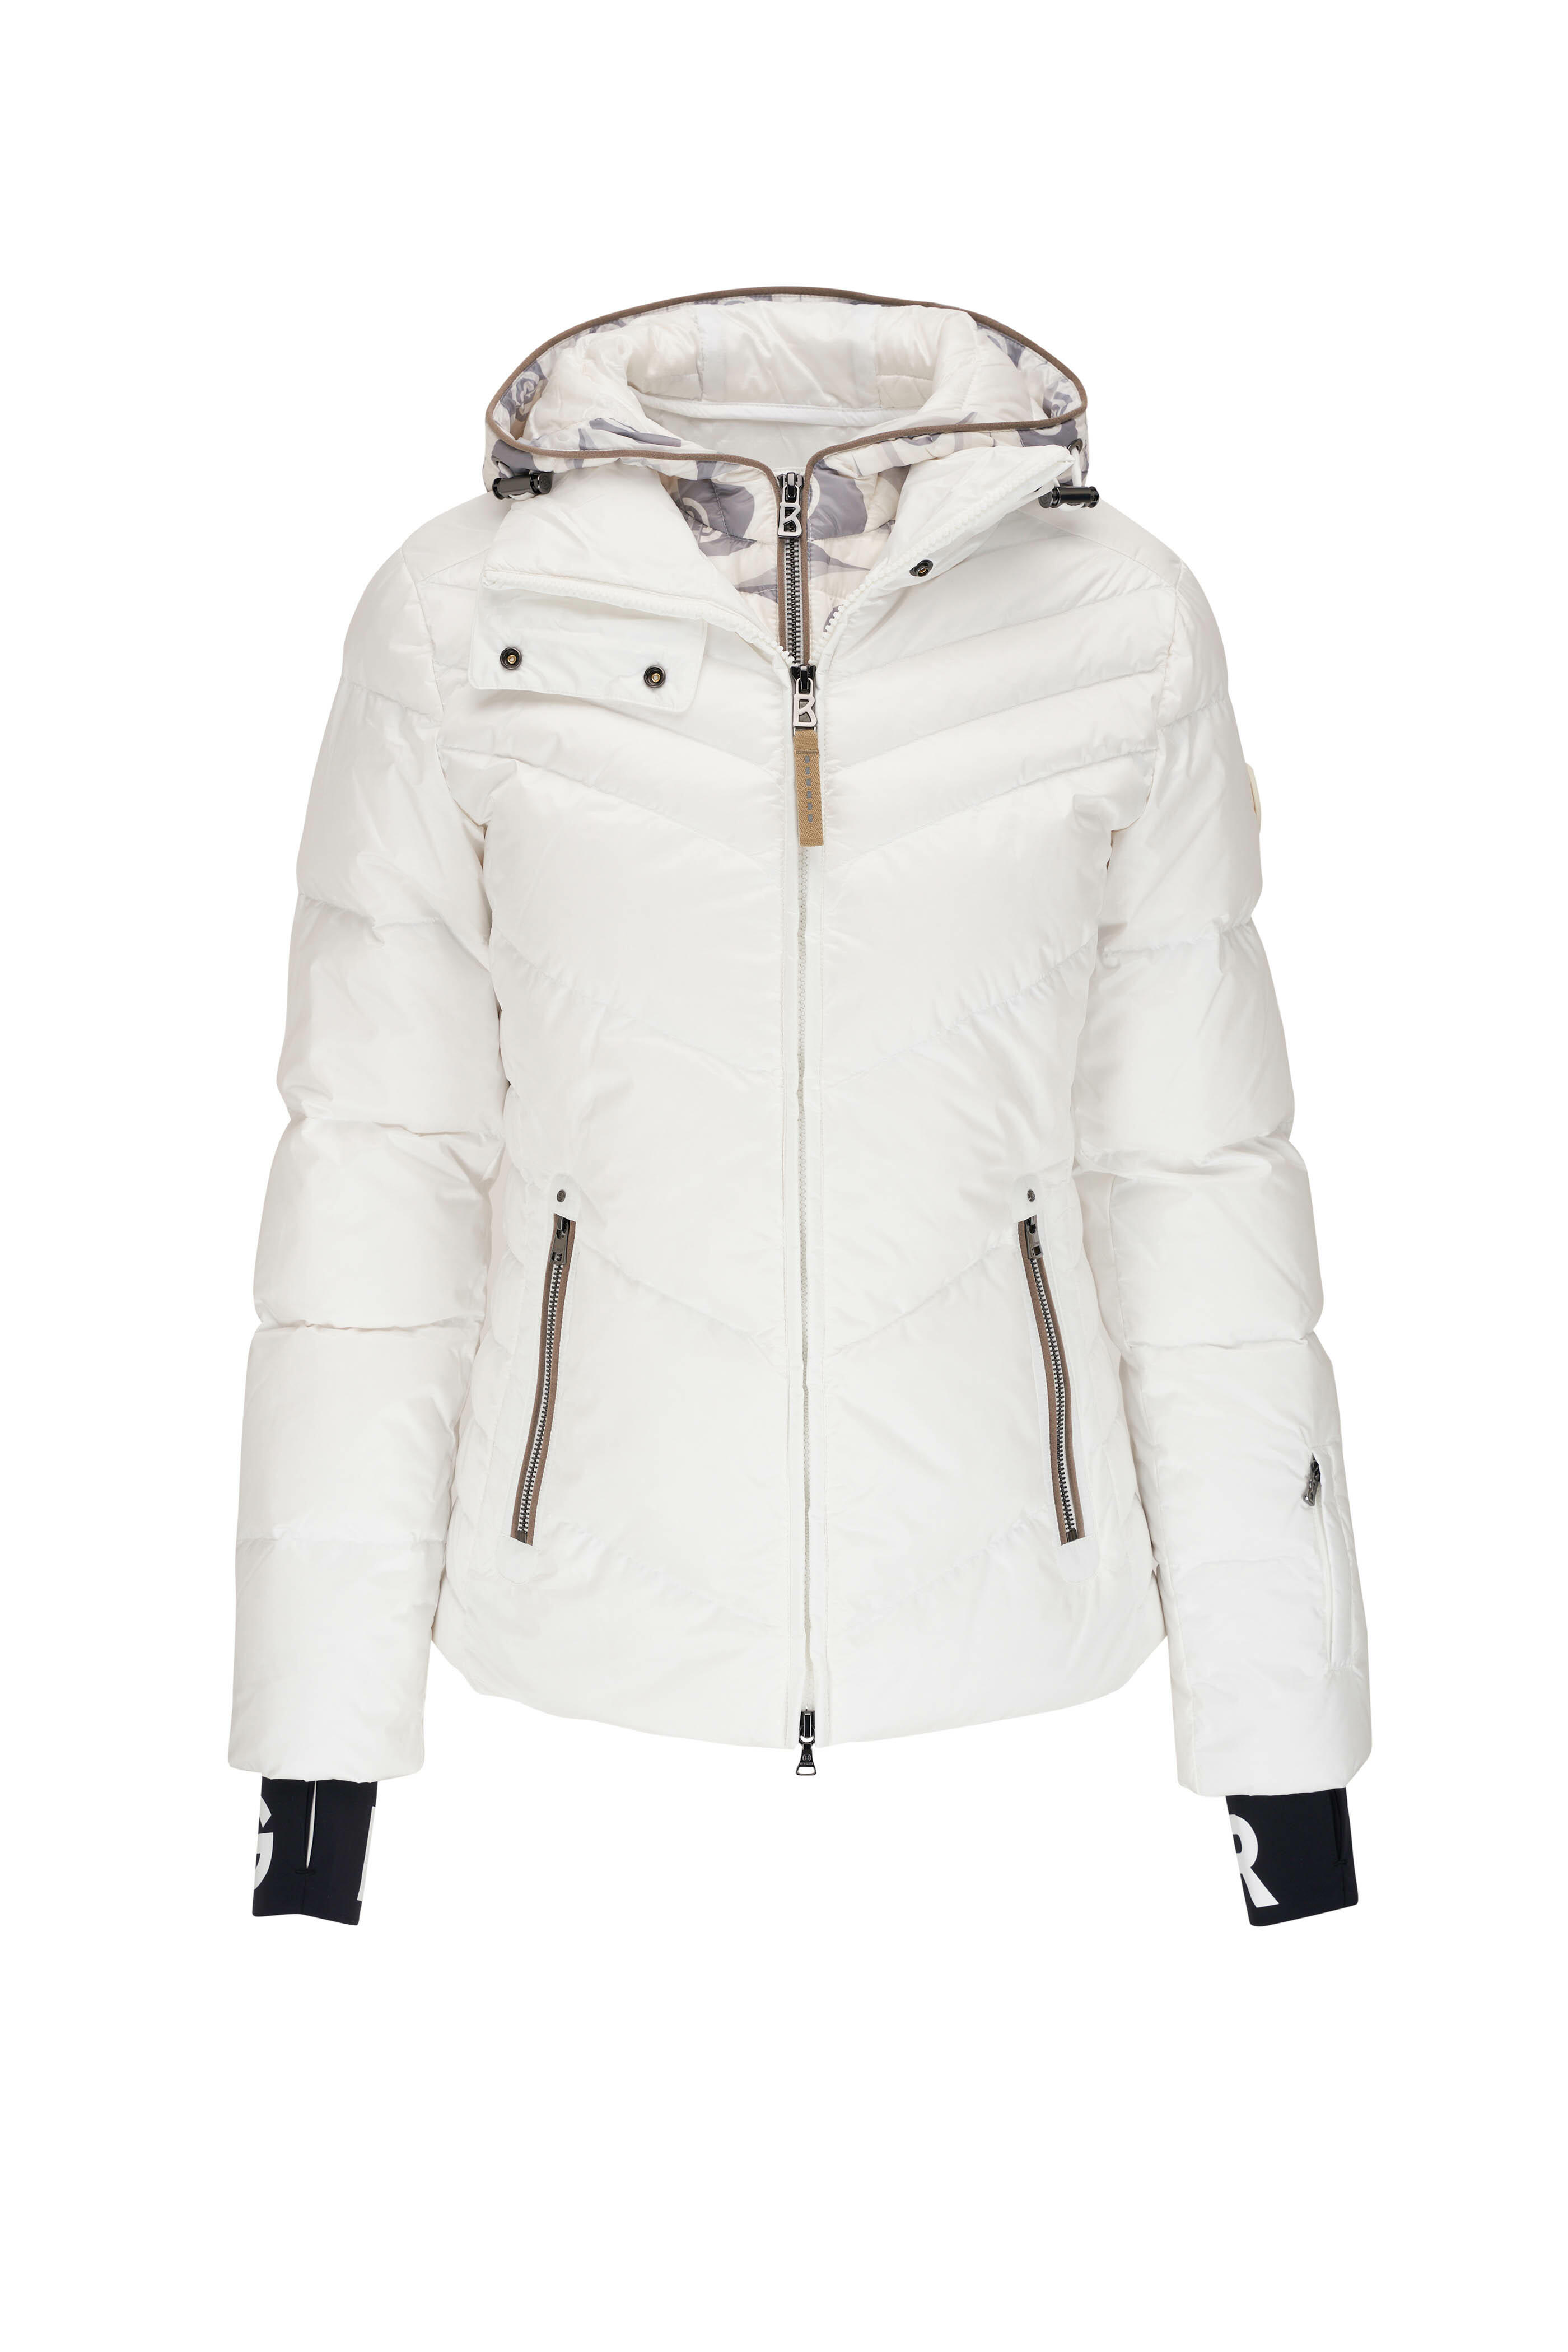 Bogner - Calie Off-White Quilted Down Ski Jacket